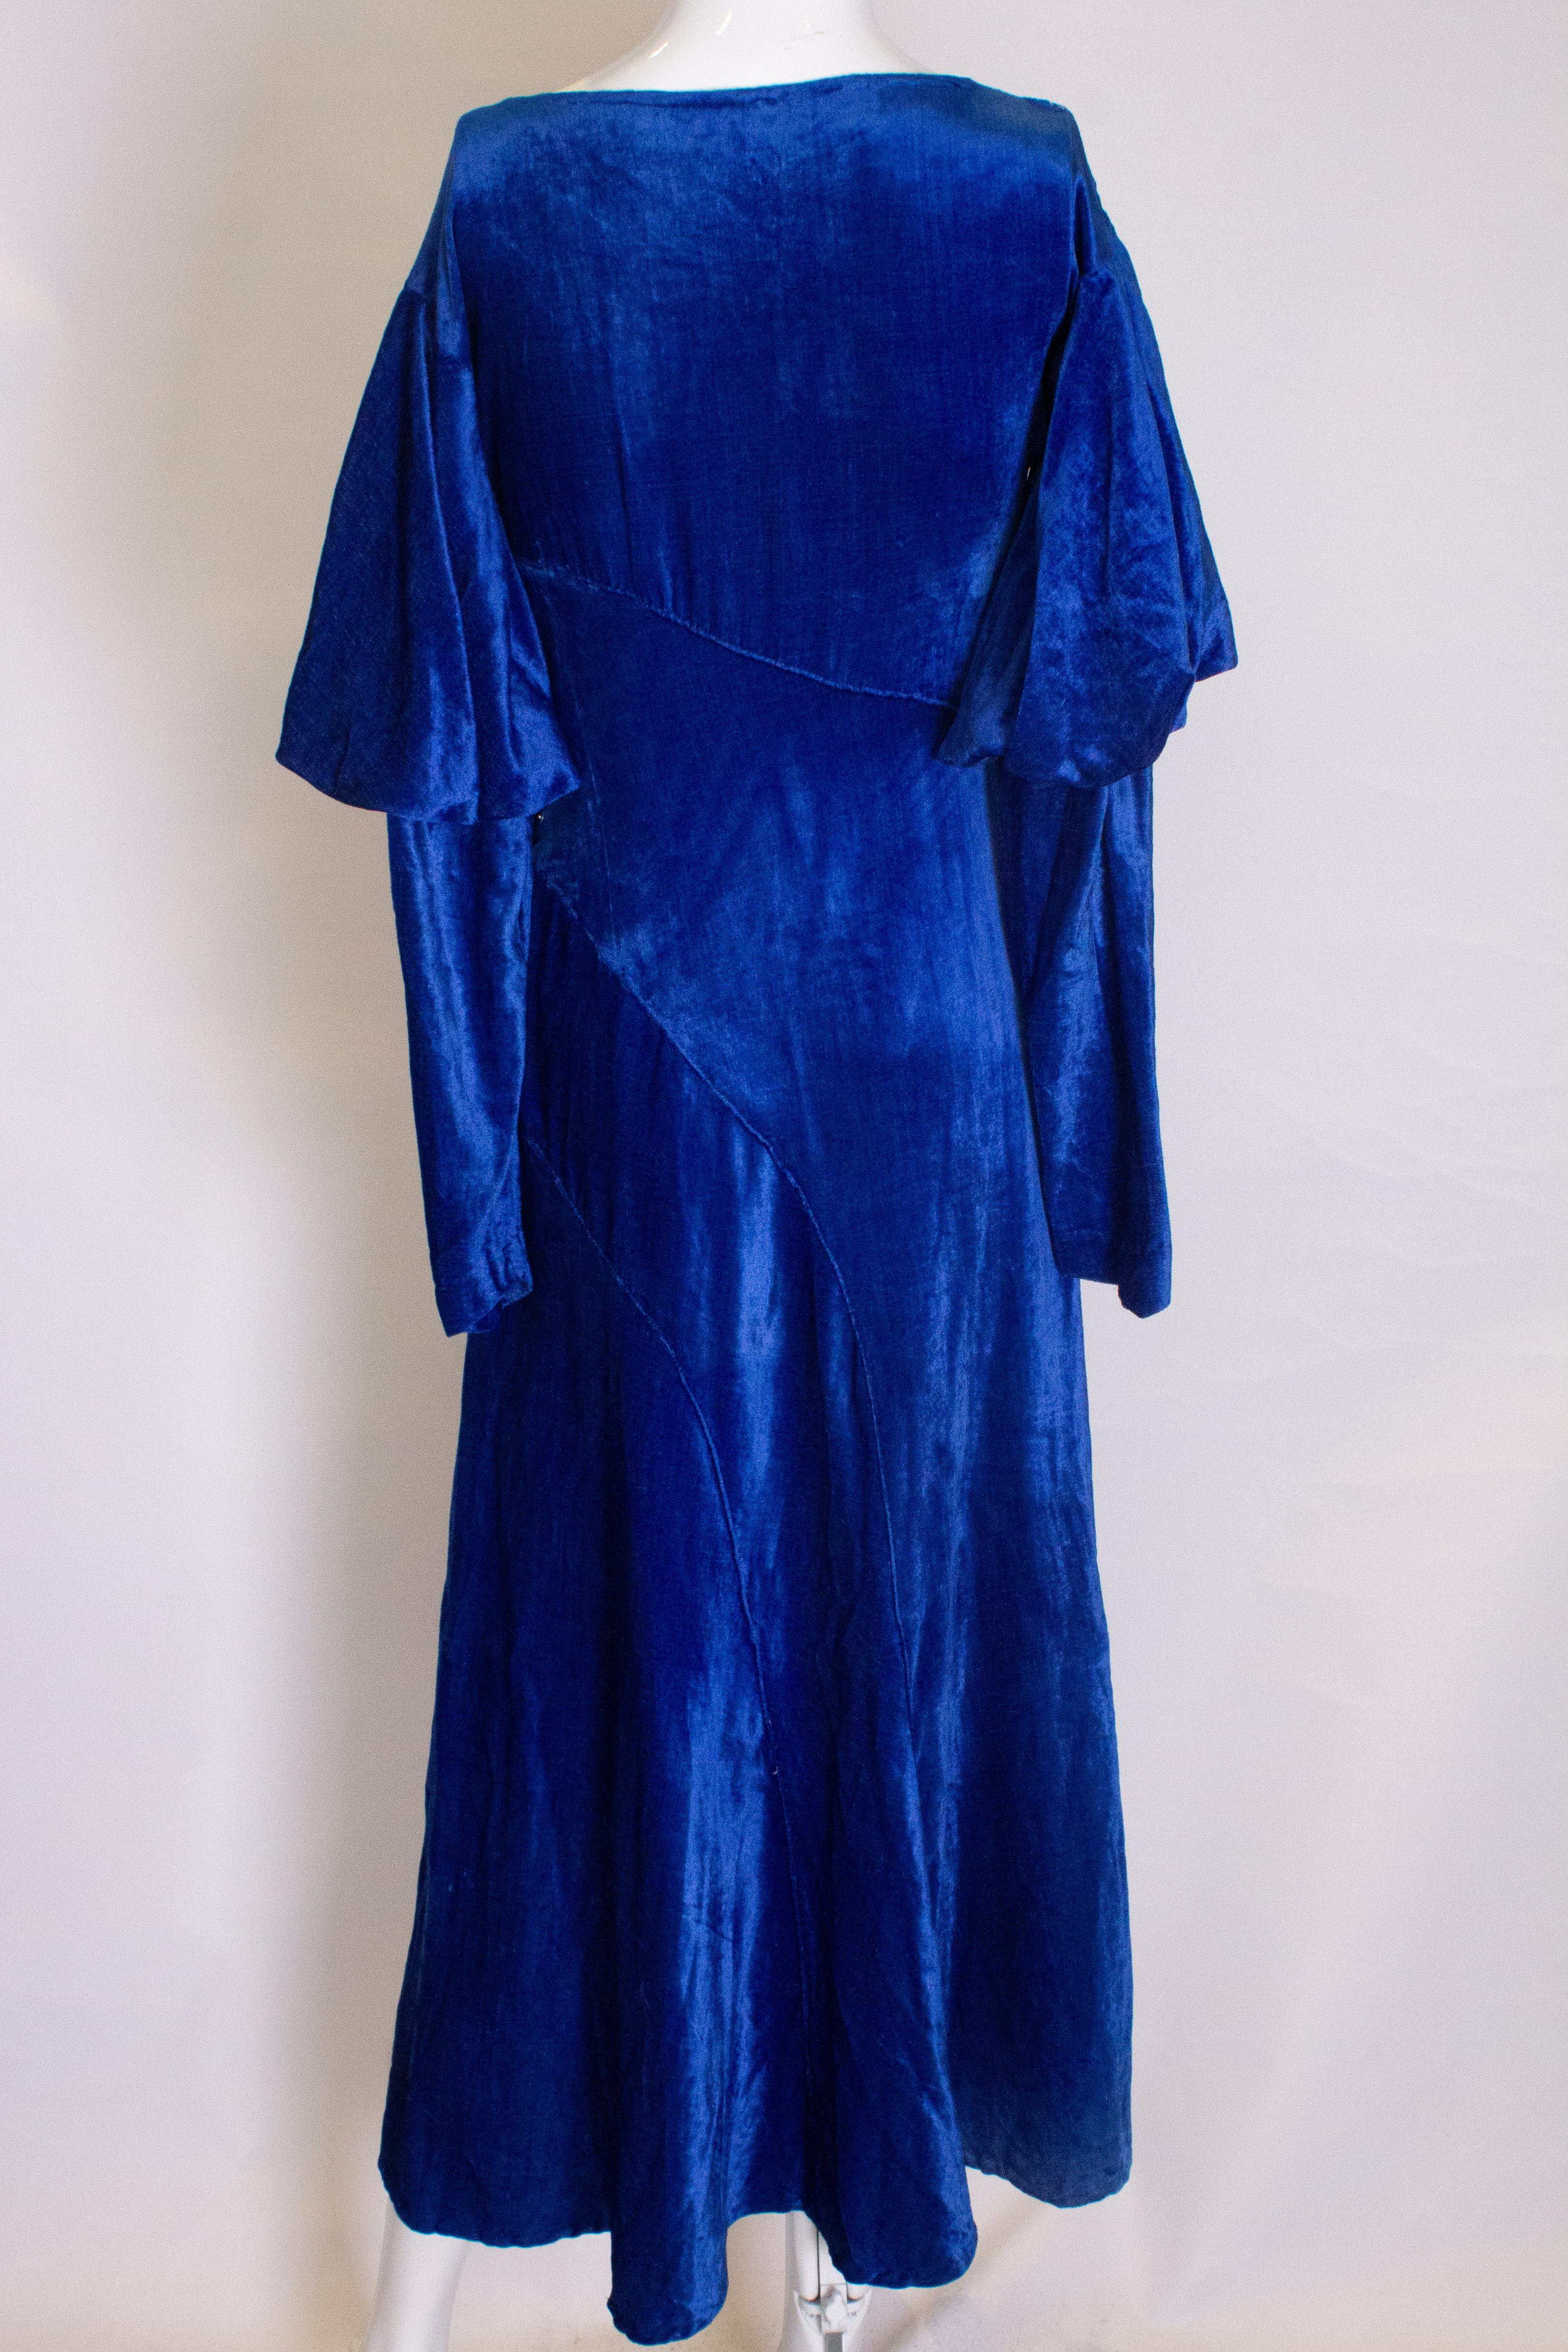 blue velvet dress vintage